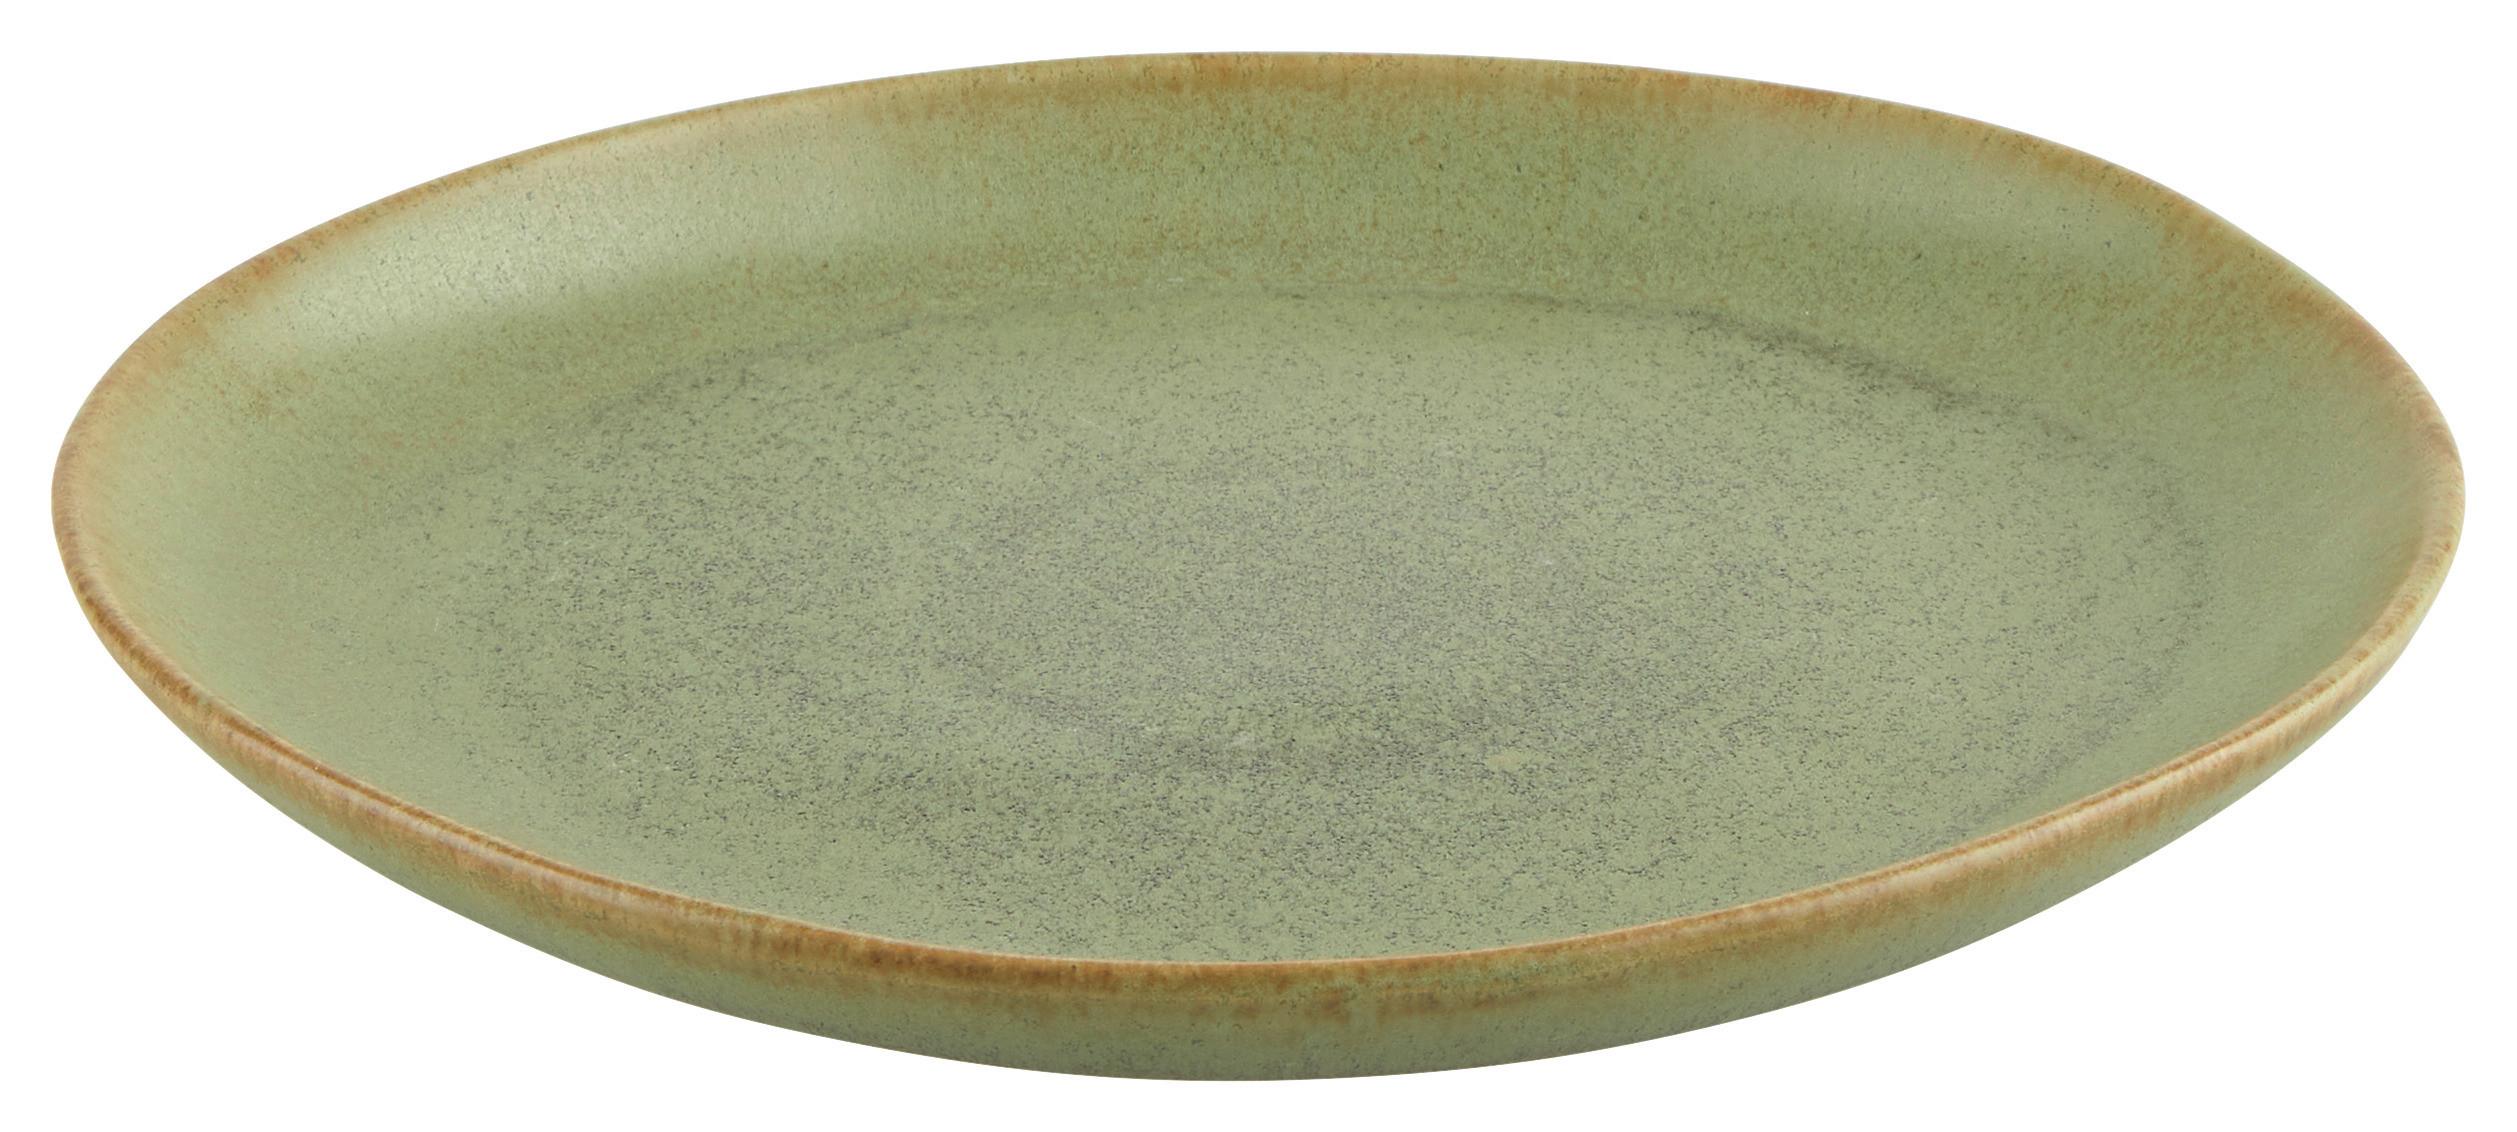 Desertni Krožnik Gourmet - temno zelena, Moderno, keramika (23/23/14cm) - Premium Living